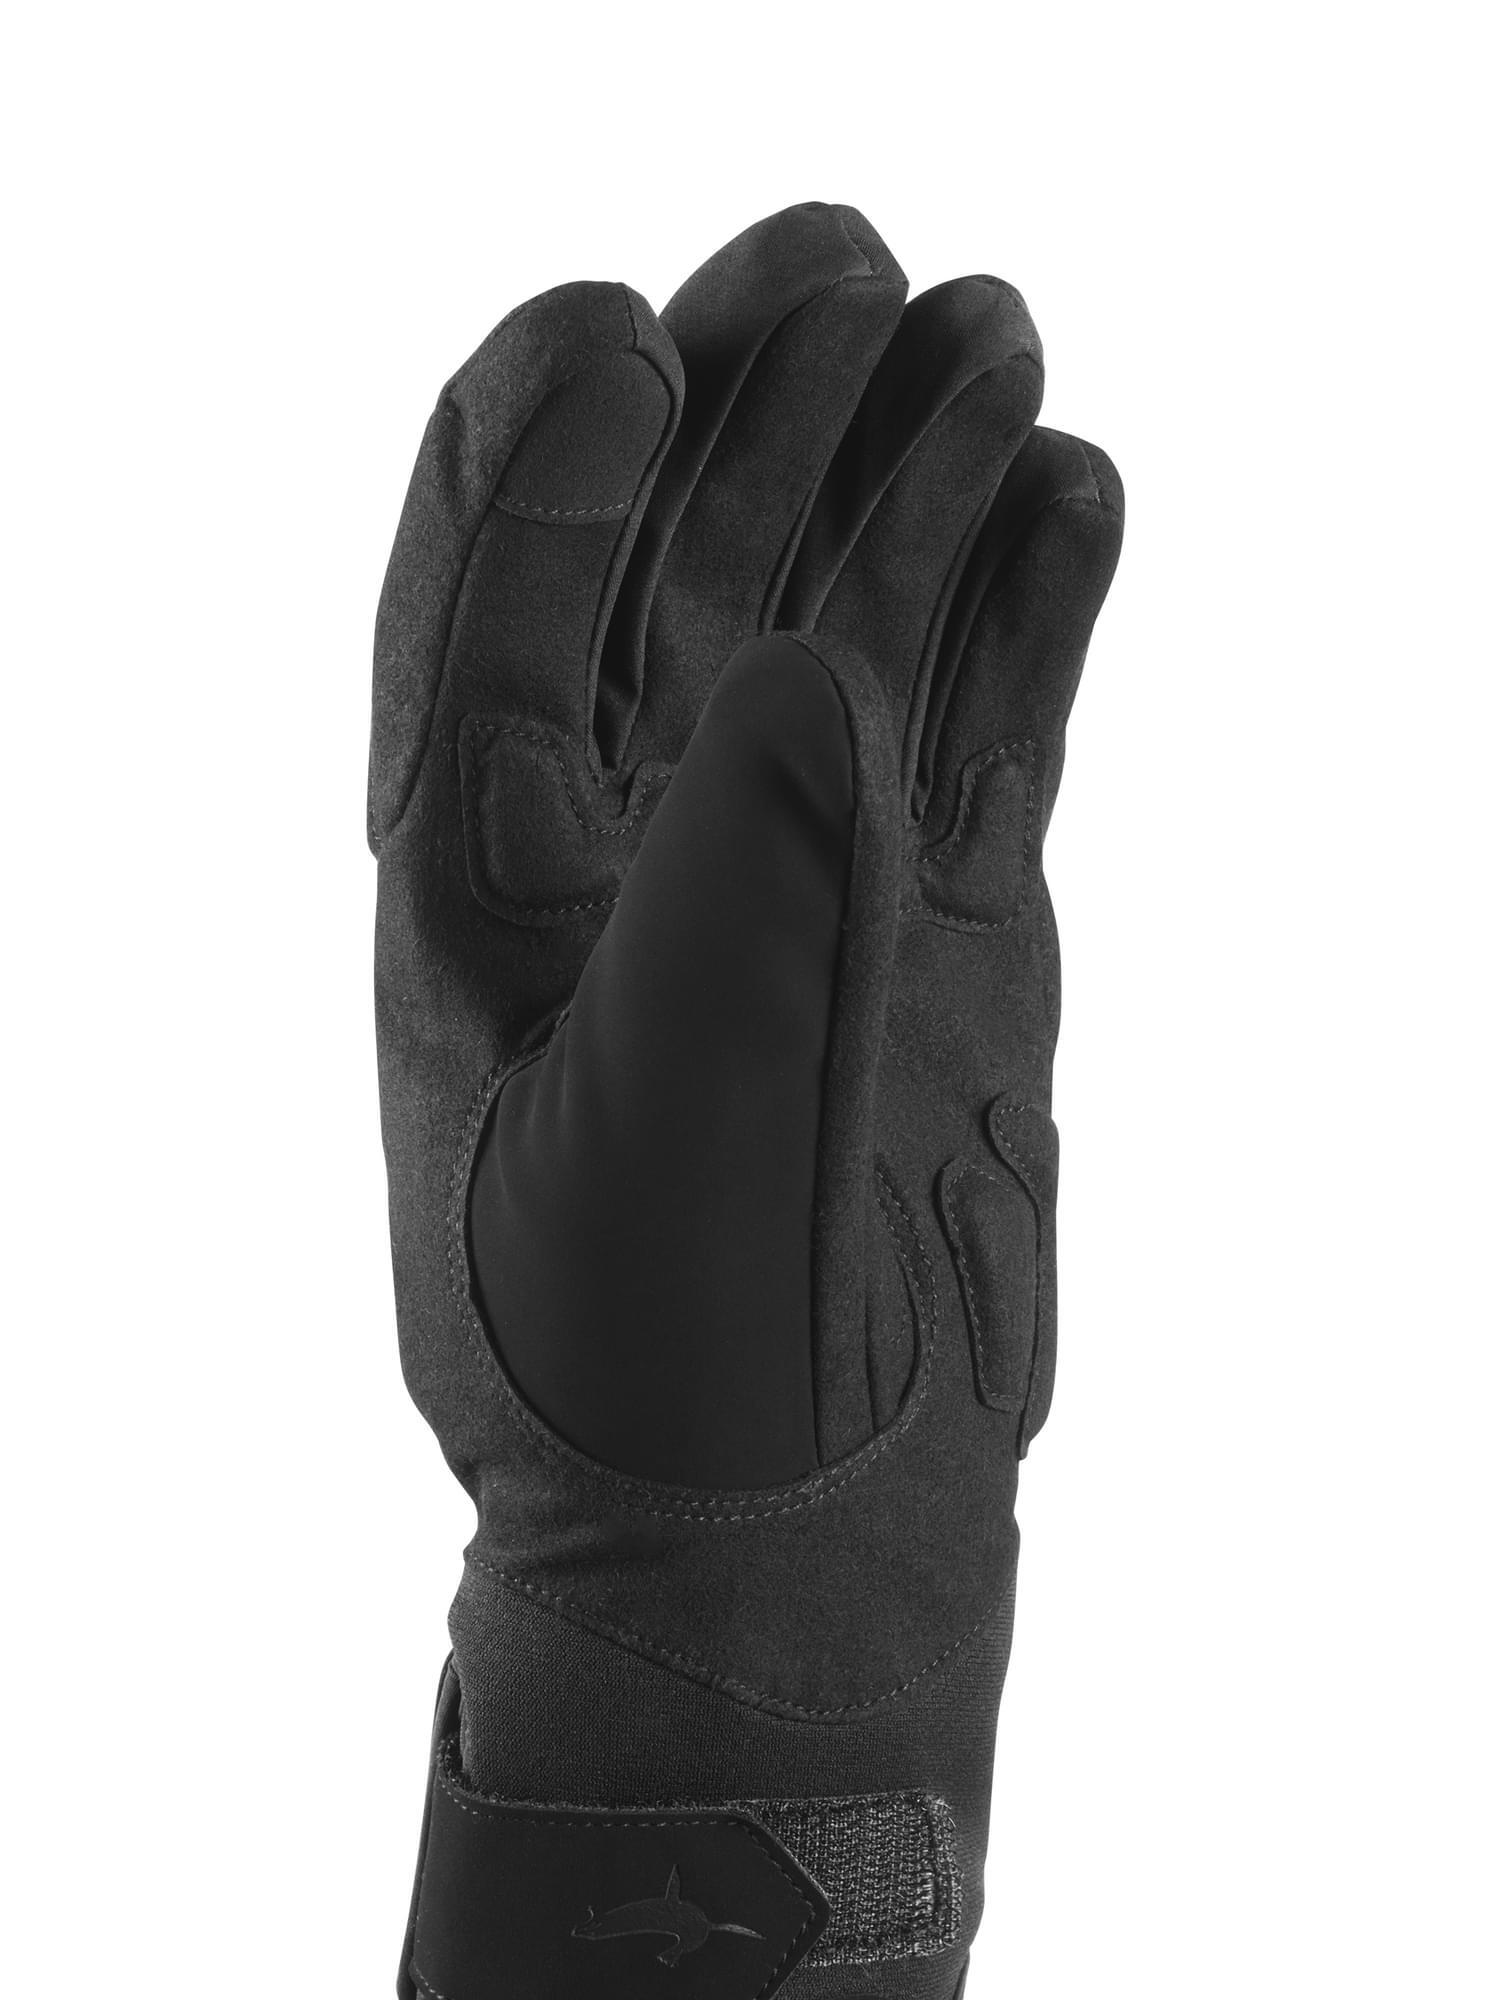 Ladies Waterproof All Weather Cycle Gloves 2/3